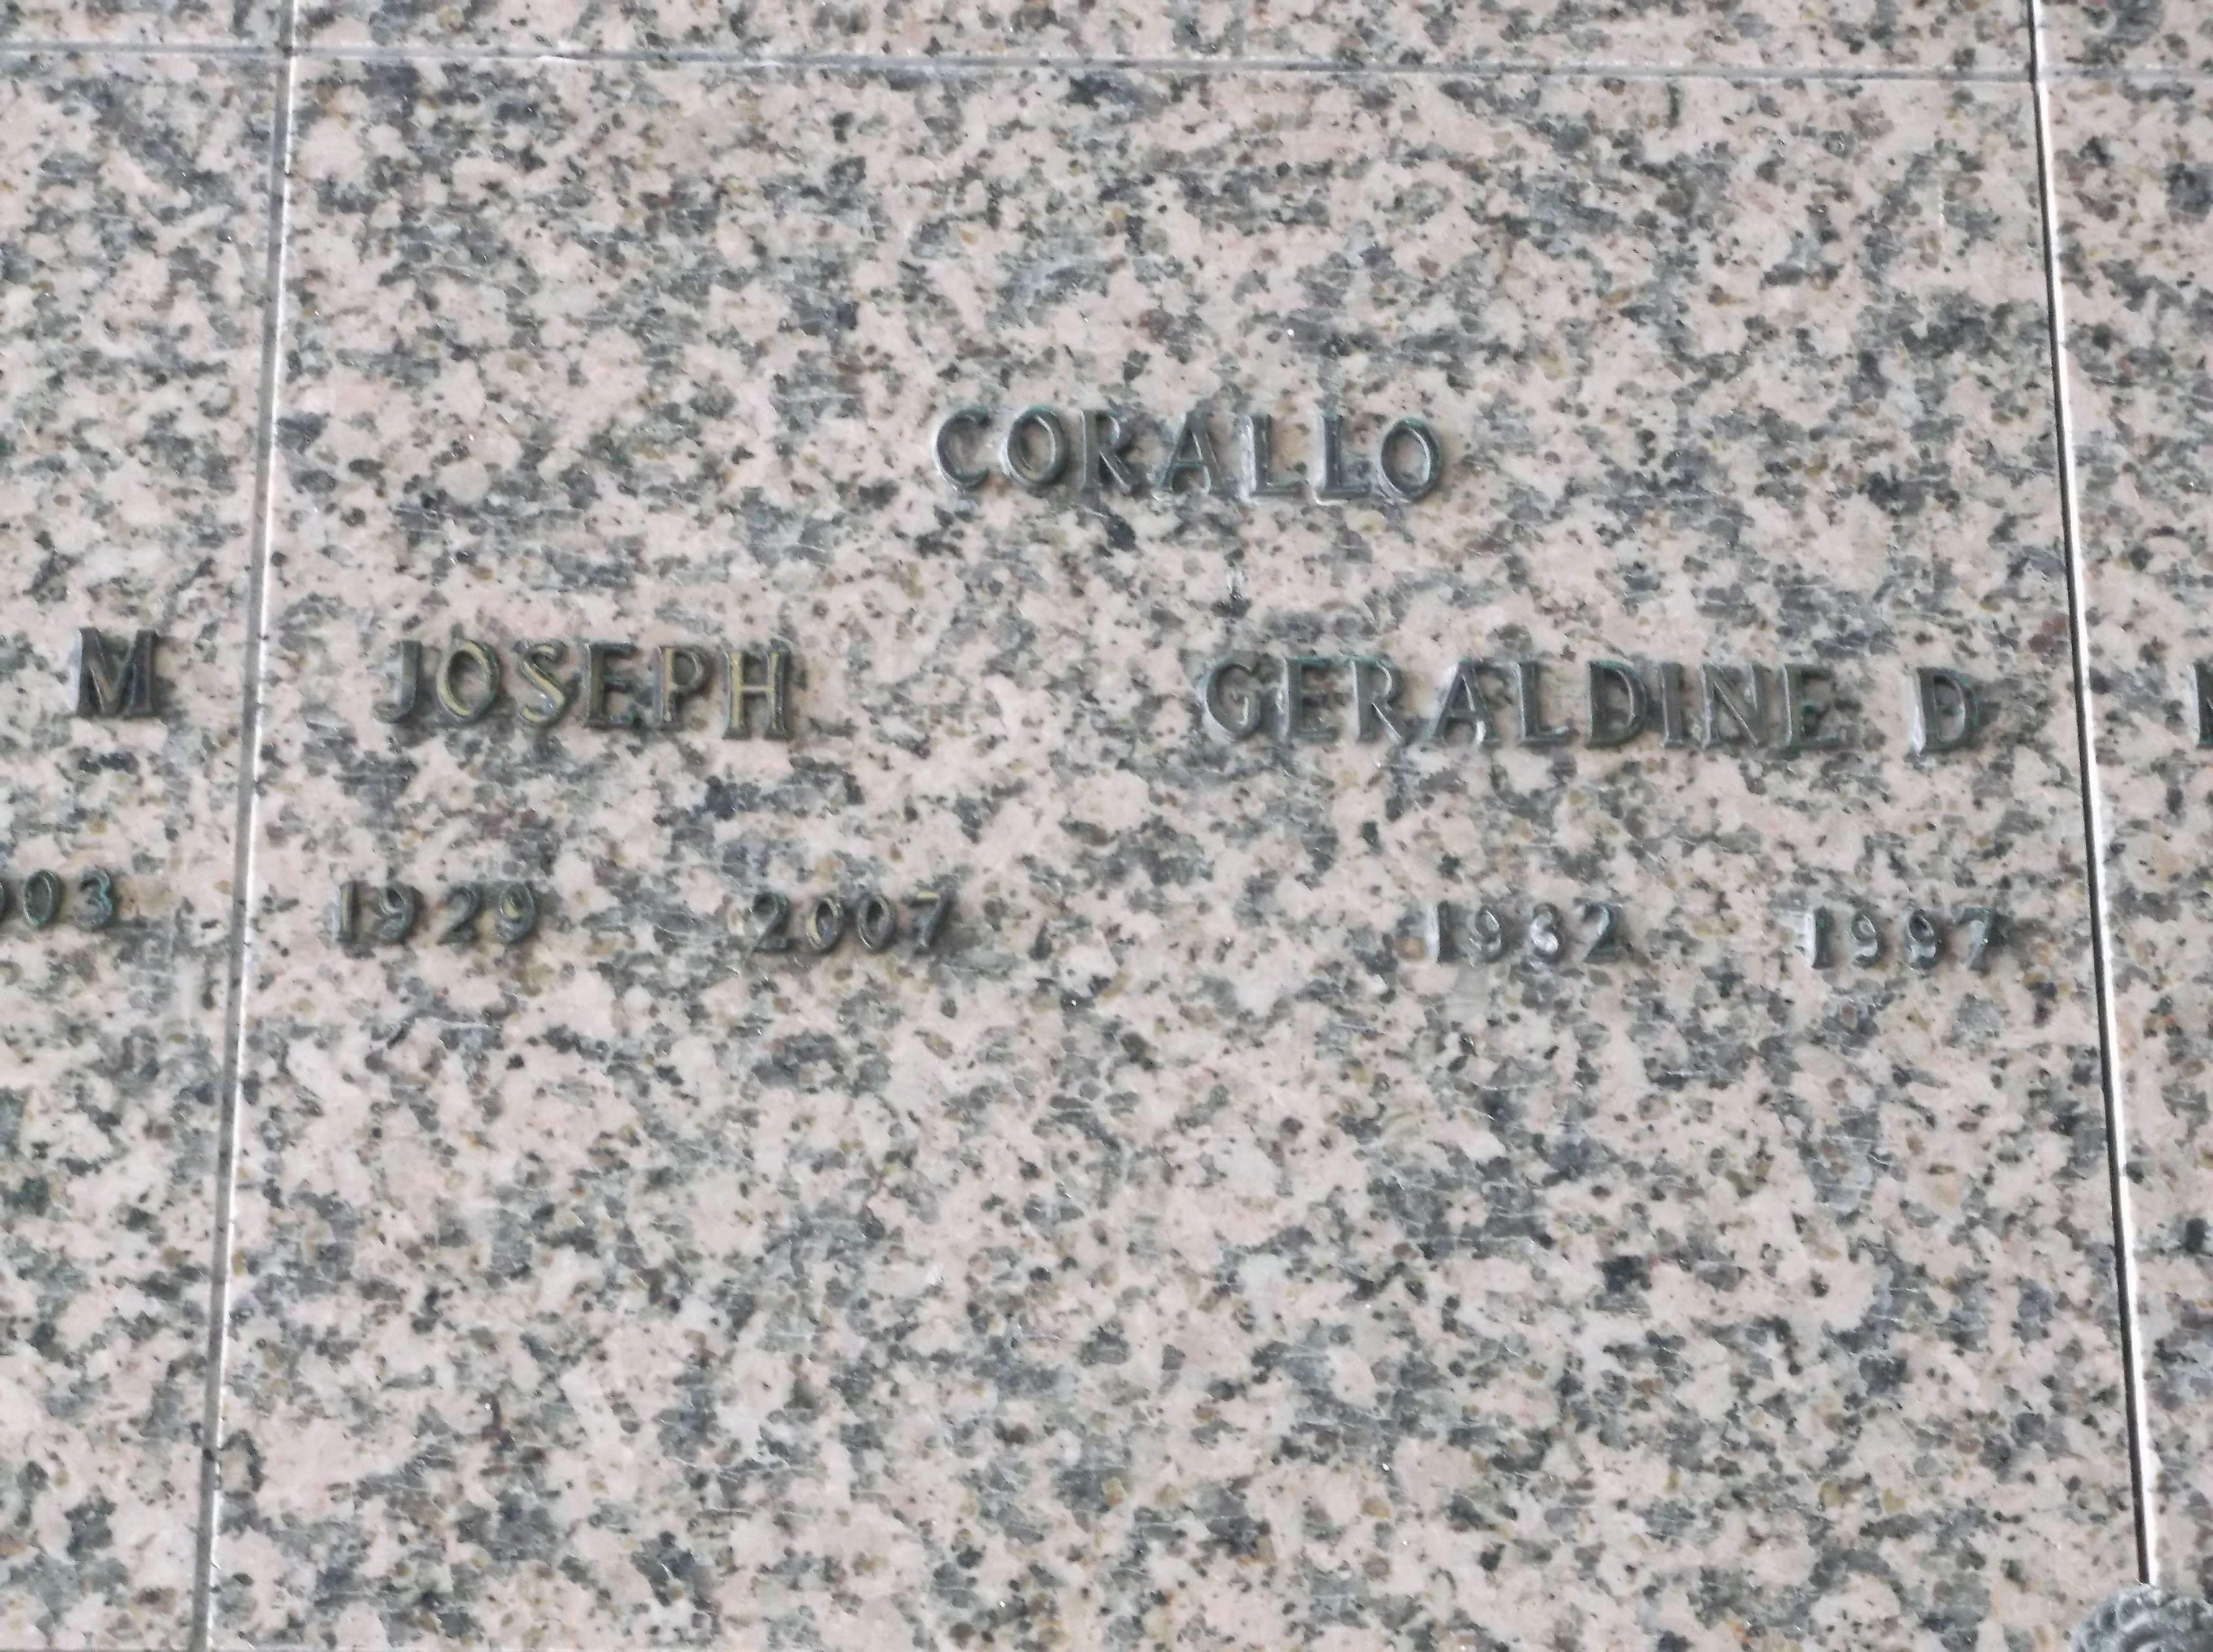 Joseph Corallo